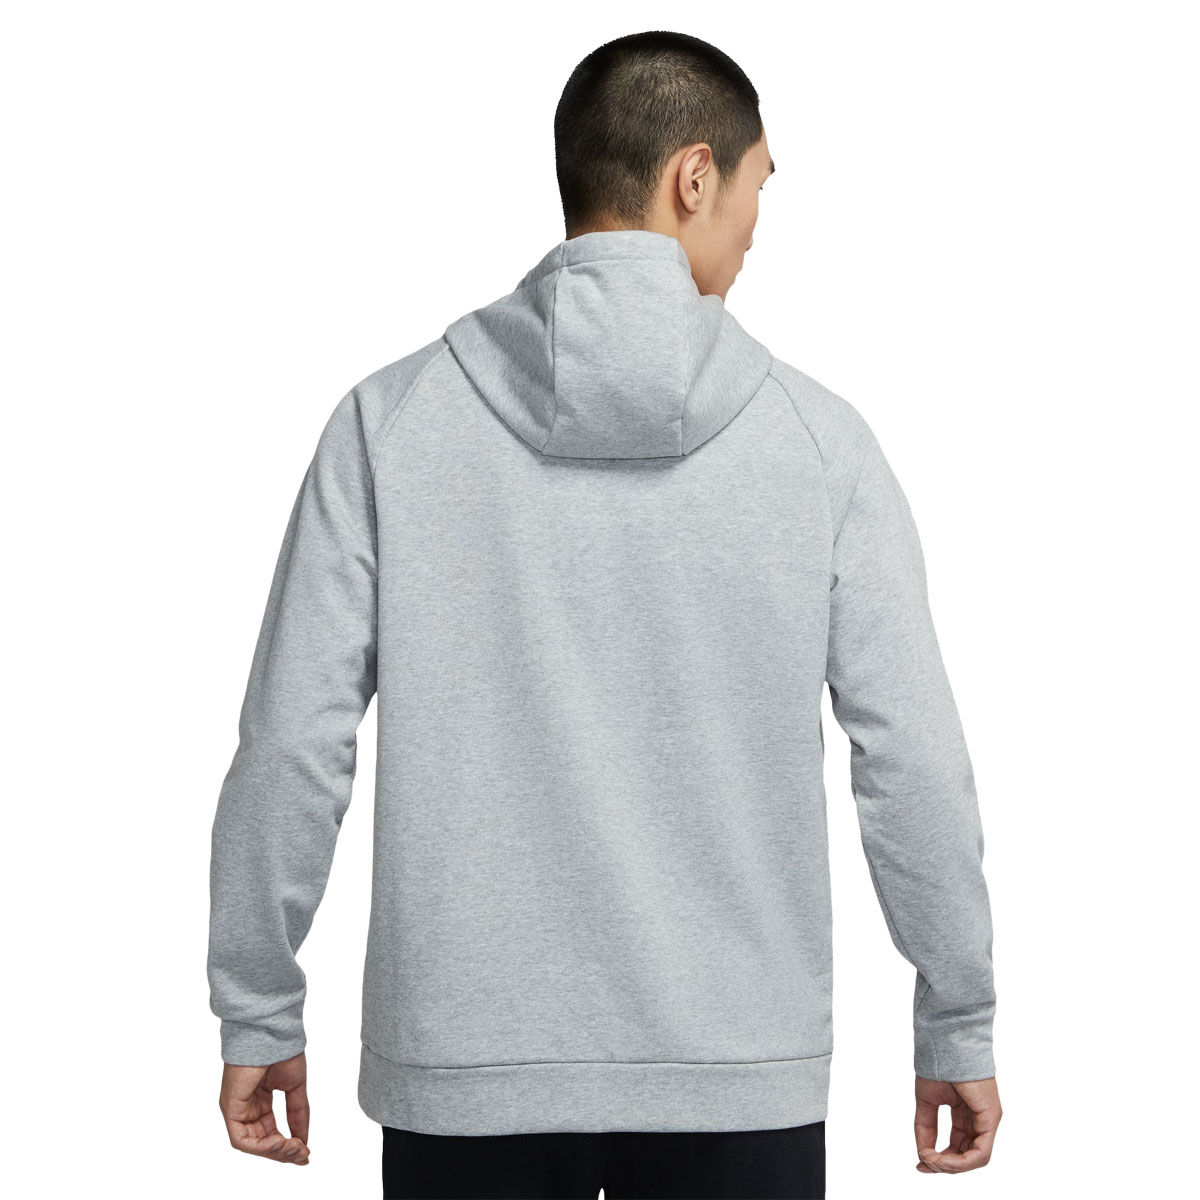 Nike Mens Dri- FIT Graphic Pullover Fitness Hoodie Grey M, Grey, rebel_hi-res